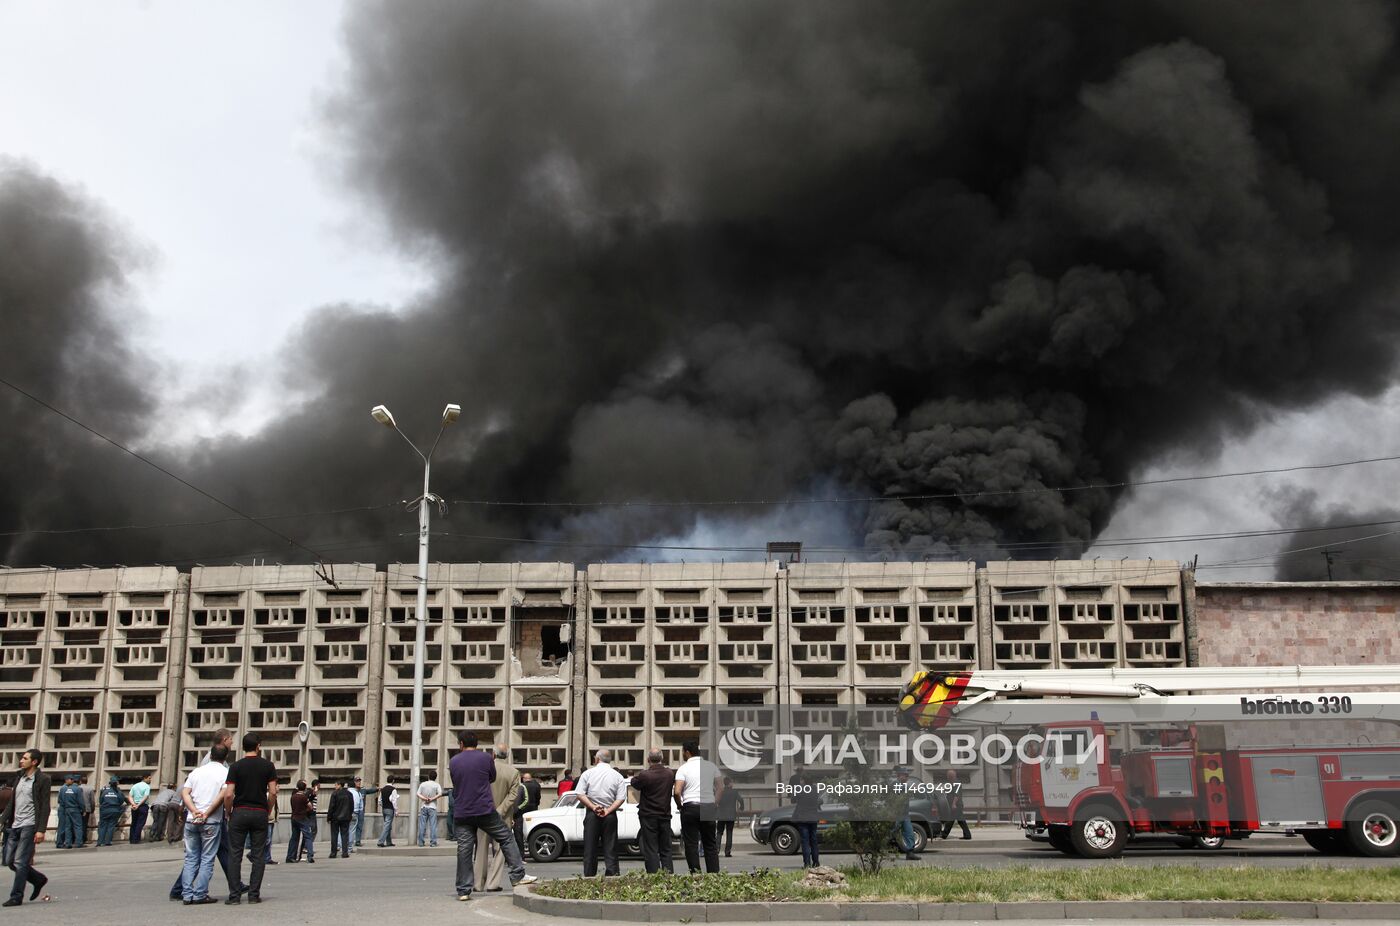 Пожар на складе компании "Спайка" в Ереване